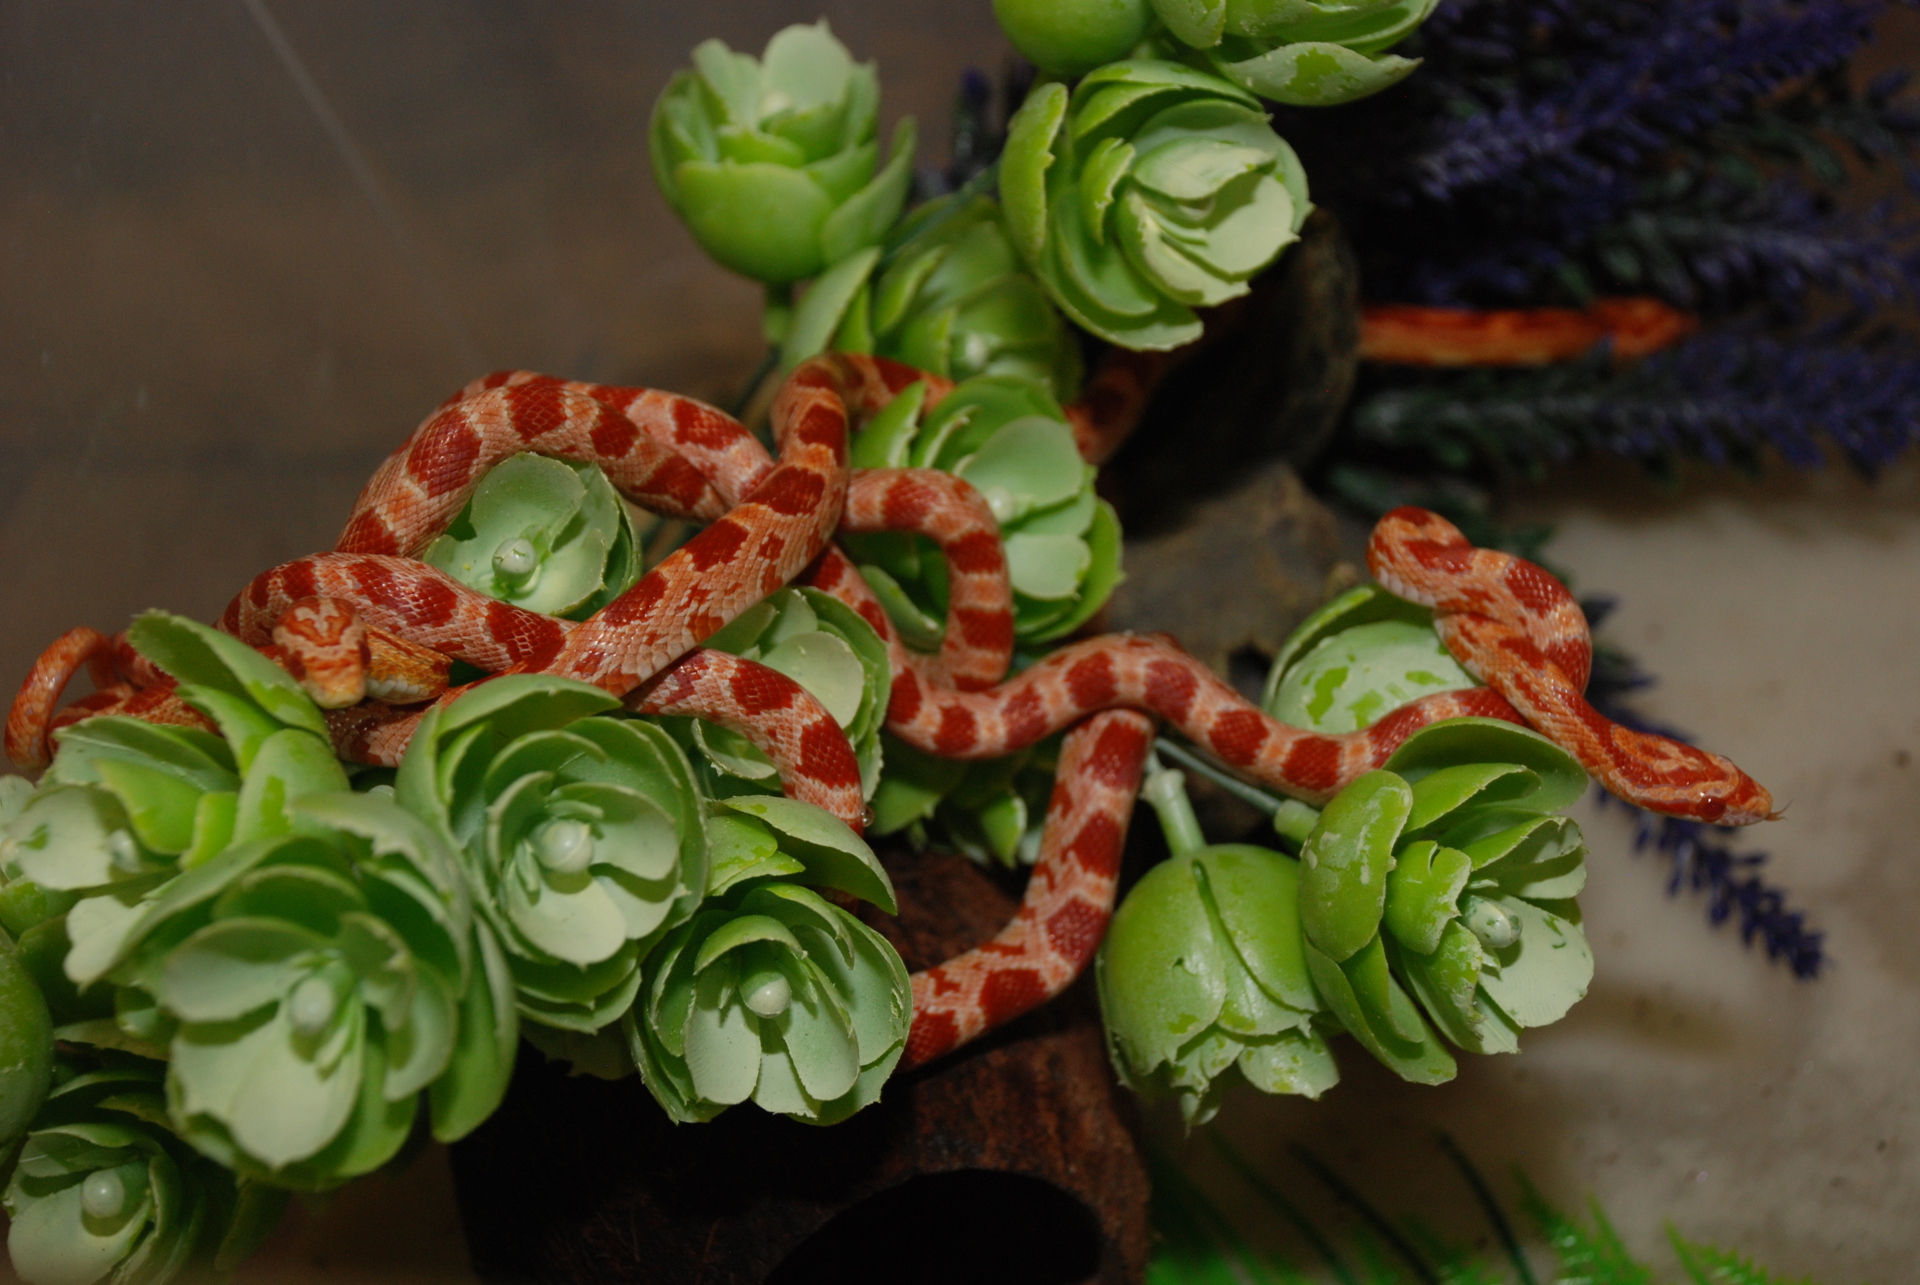 Змея маисовый полоз, ручные полоза 30-40 см